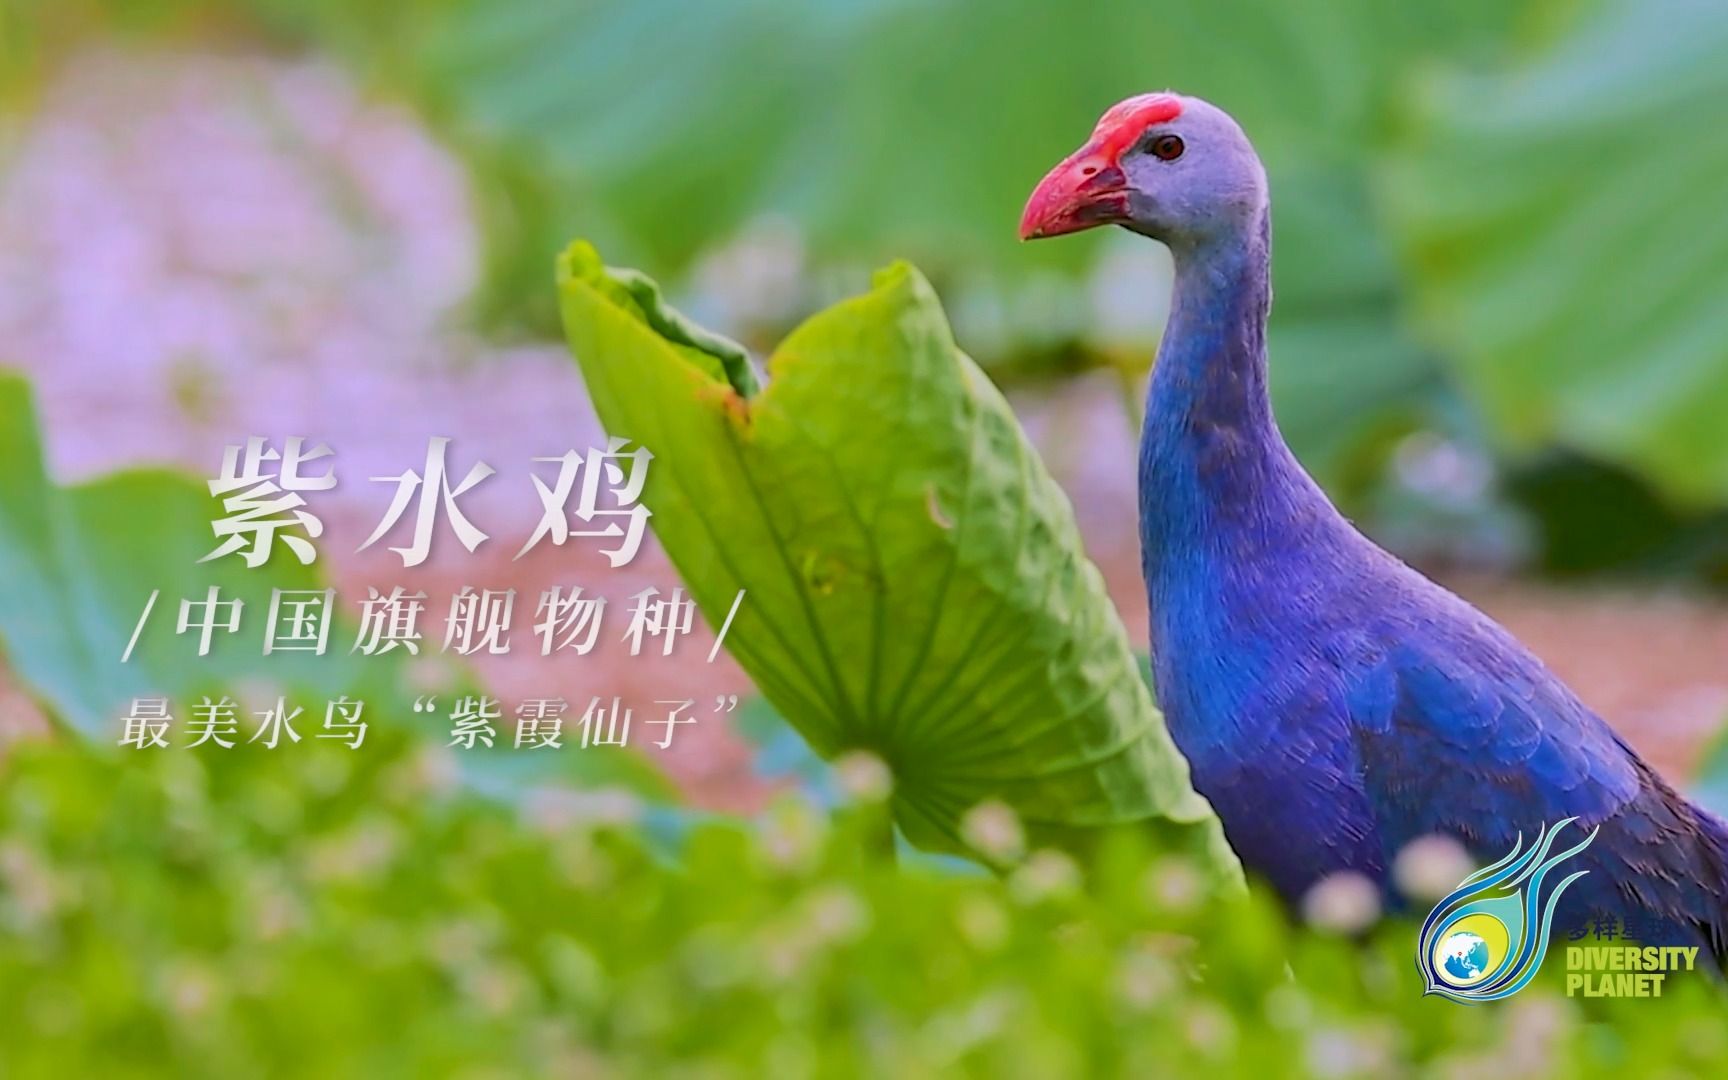 【多样星球】“世界最美水鸟”、“紫霞仙子”——紫水鸡